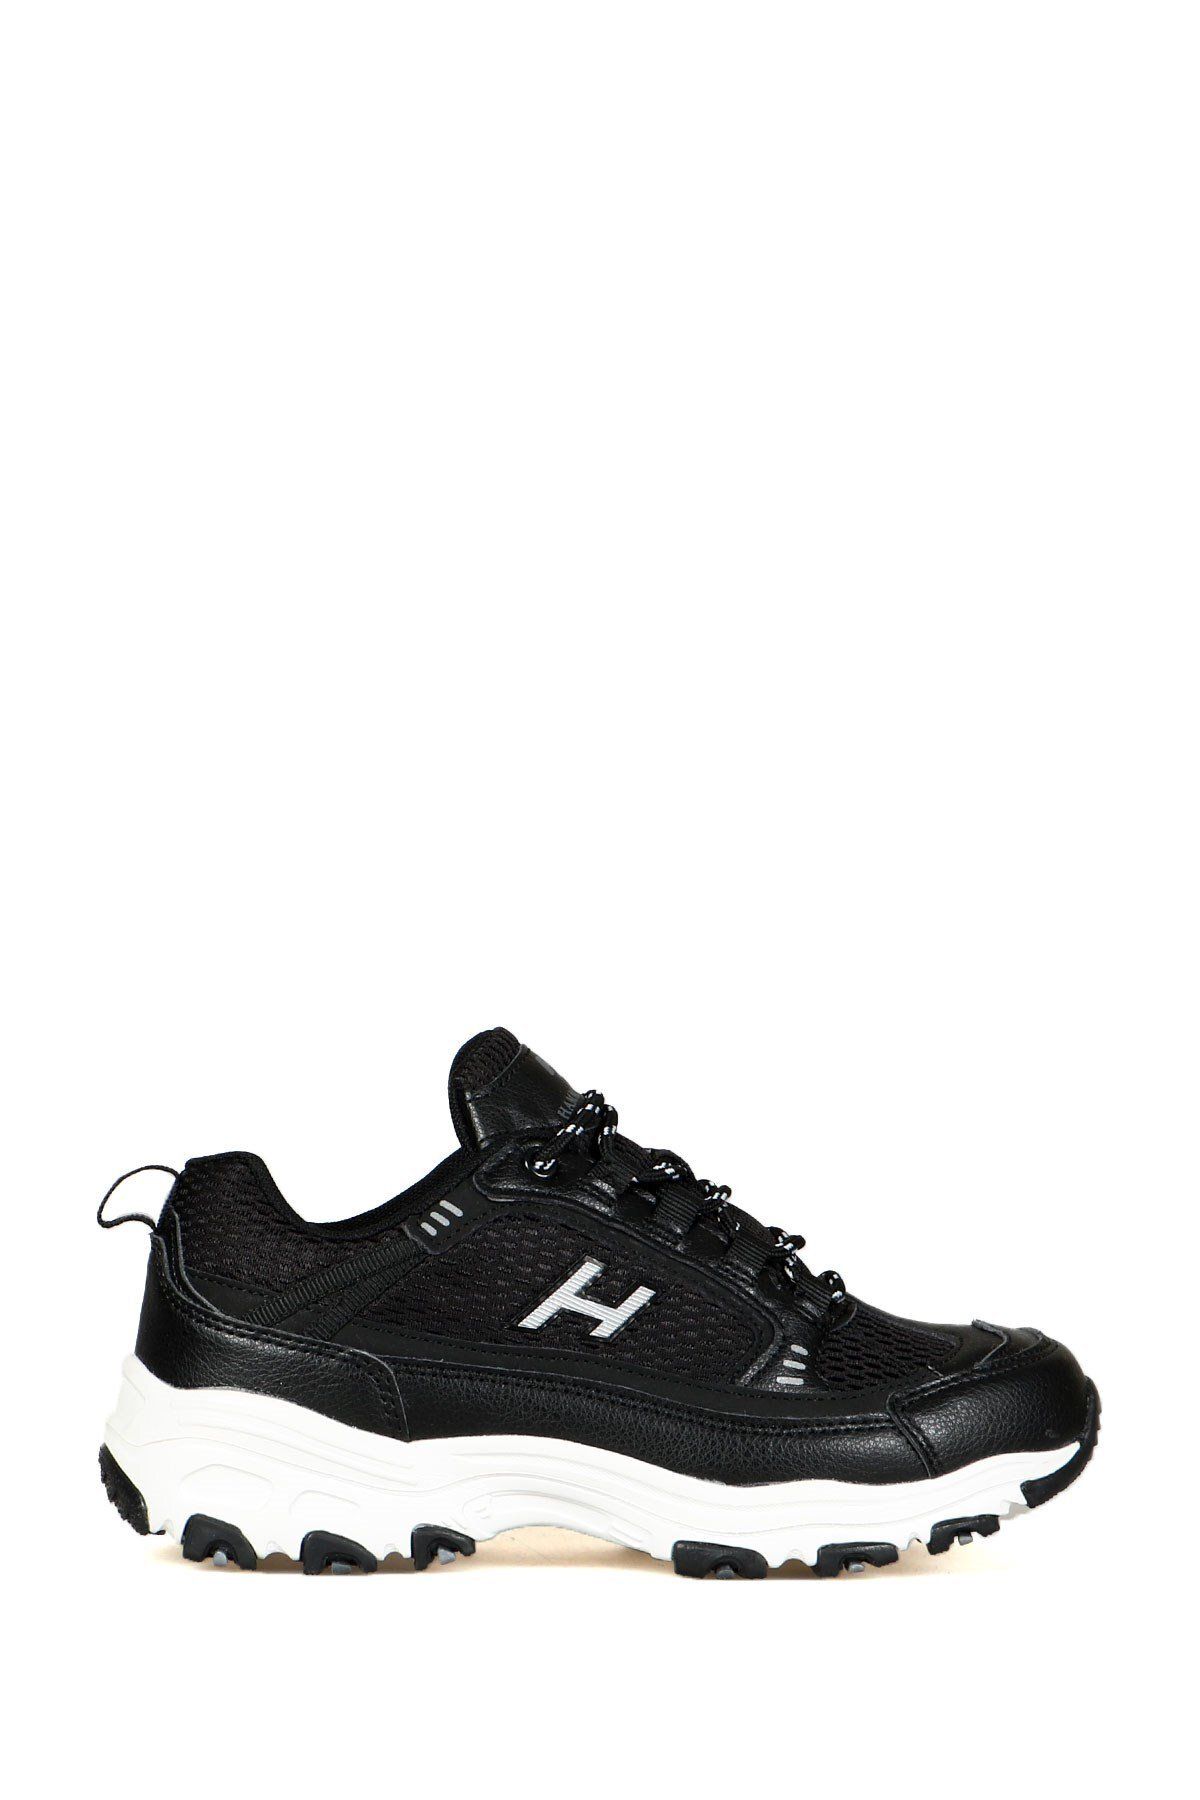 Hammer Jack Artigas Siyah-beyaz Kadın Spor Ayakkabı